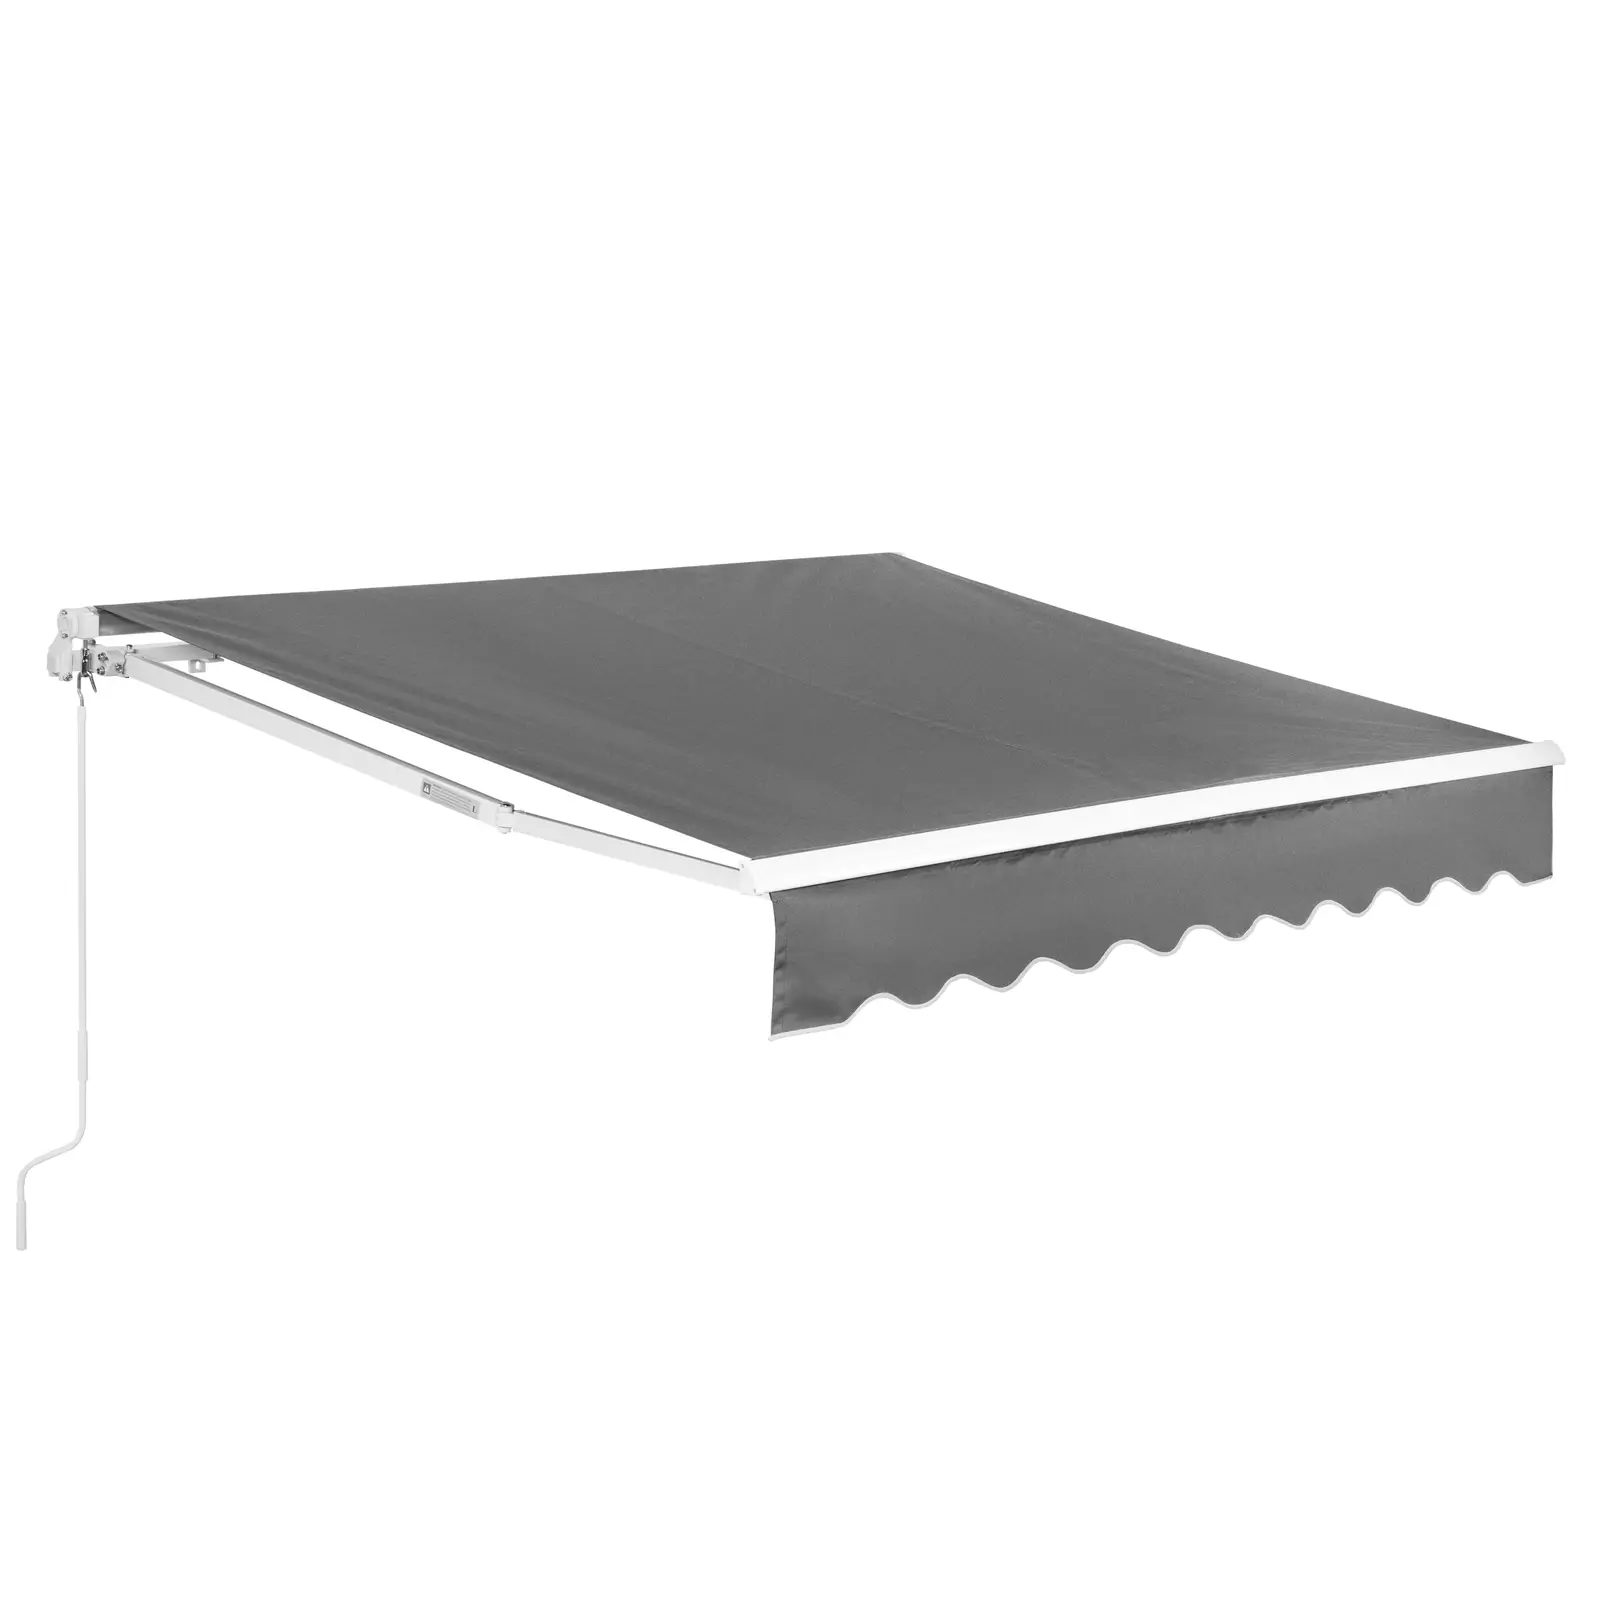 Trak z objemko - za balkon / teraso - ročni - 200 x 250 cm - odporen na UV žarke - antracitno siv